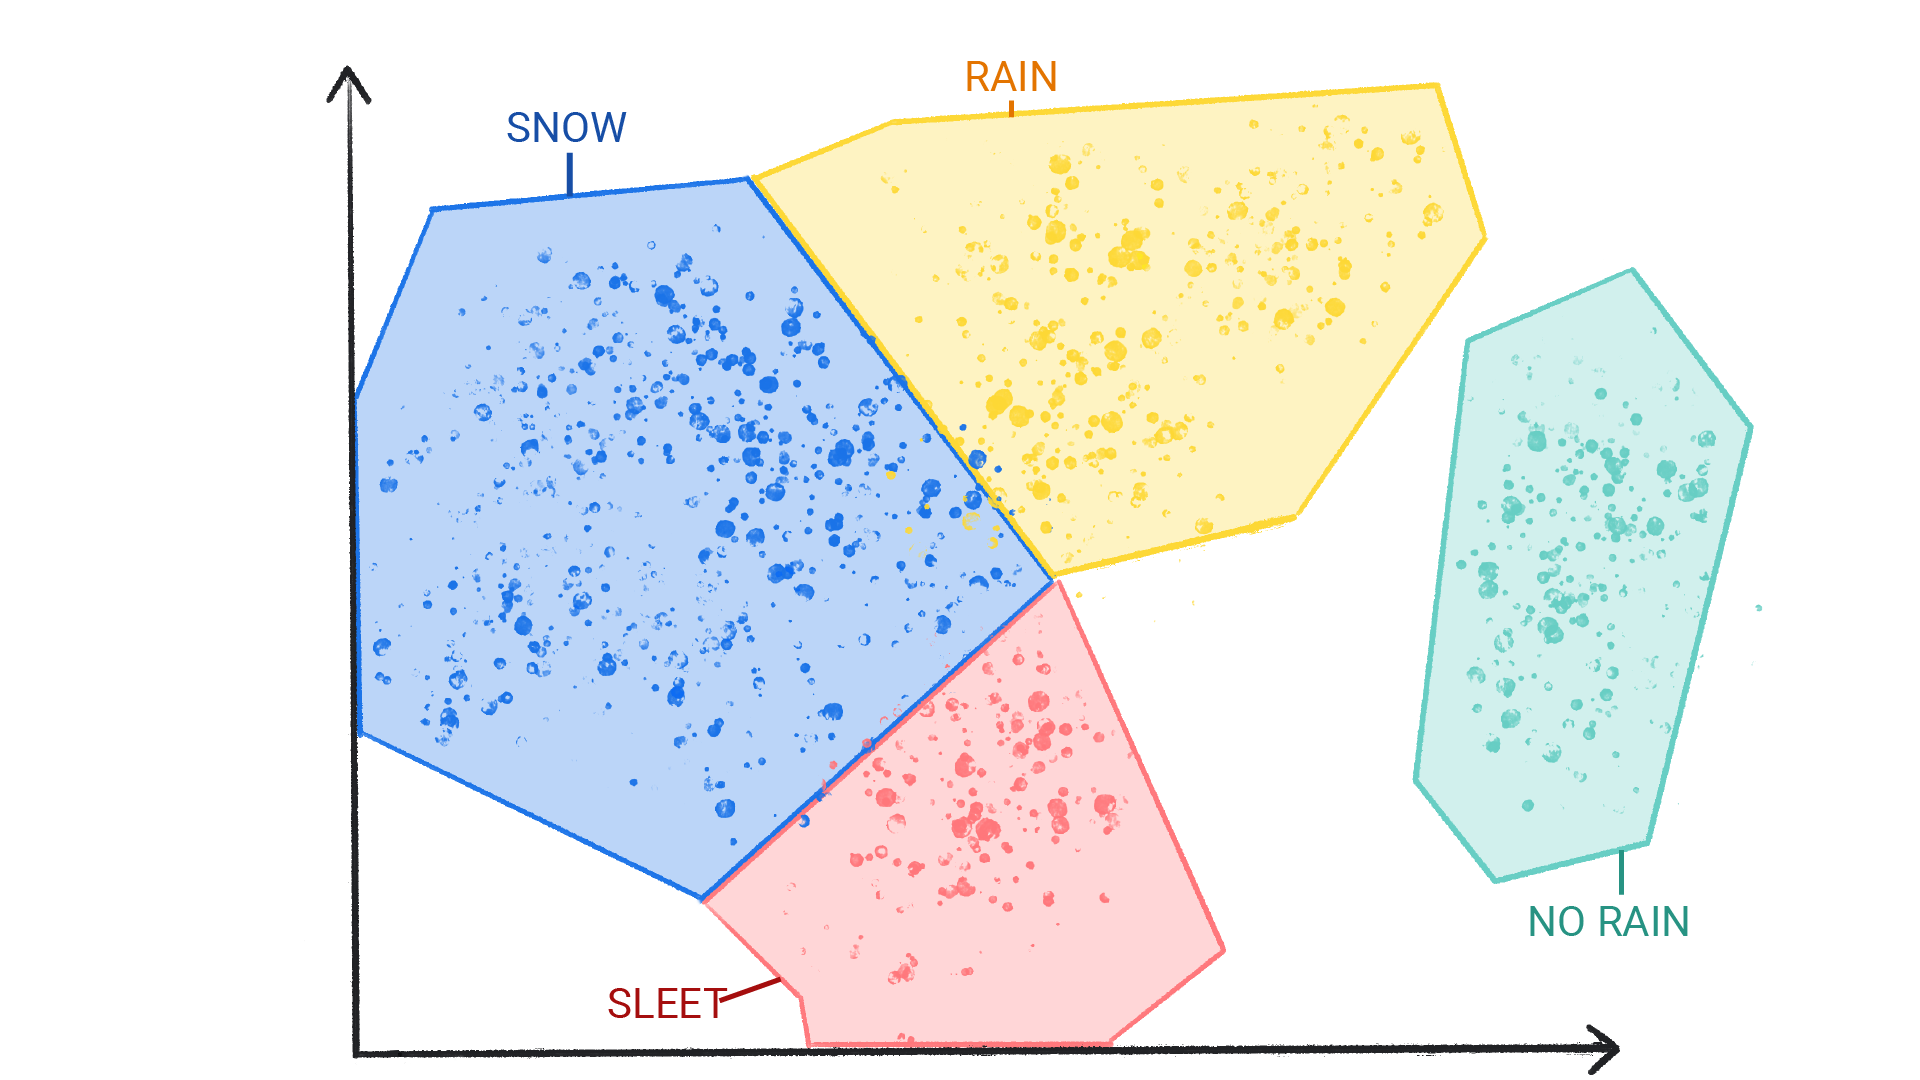 Hình ảnh hiển thị các chấm có màu sắc thành từng cụm được gắn nhãn là tuyết, mưa, mưa đá và không có mưa được kết hợp theo một hình và đường viền với nhau.